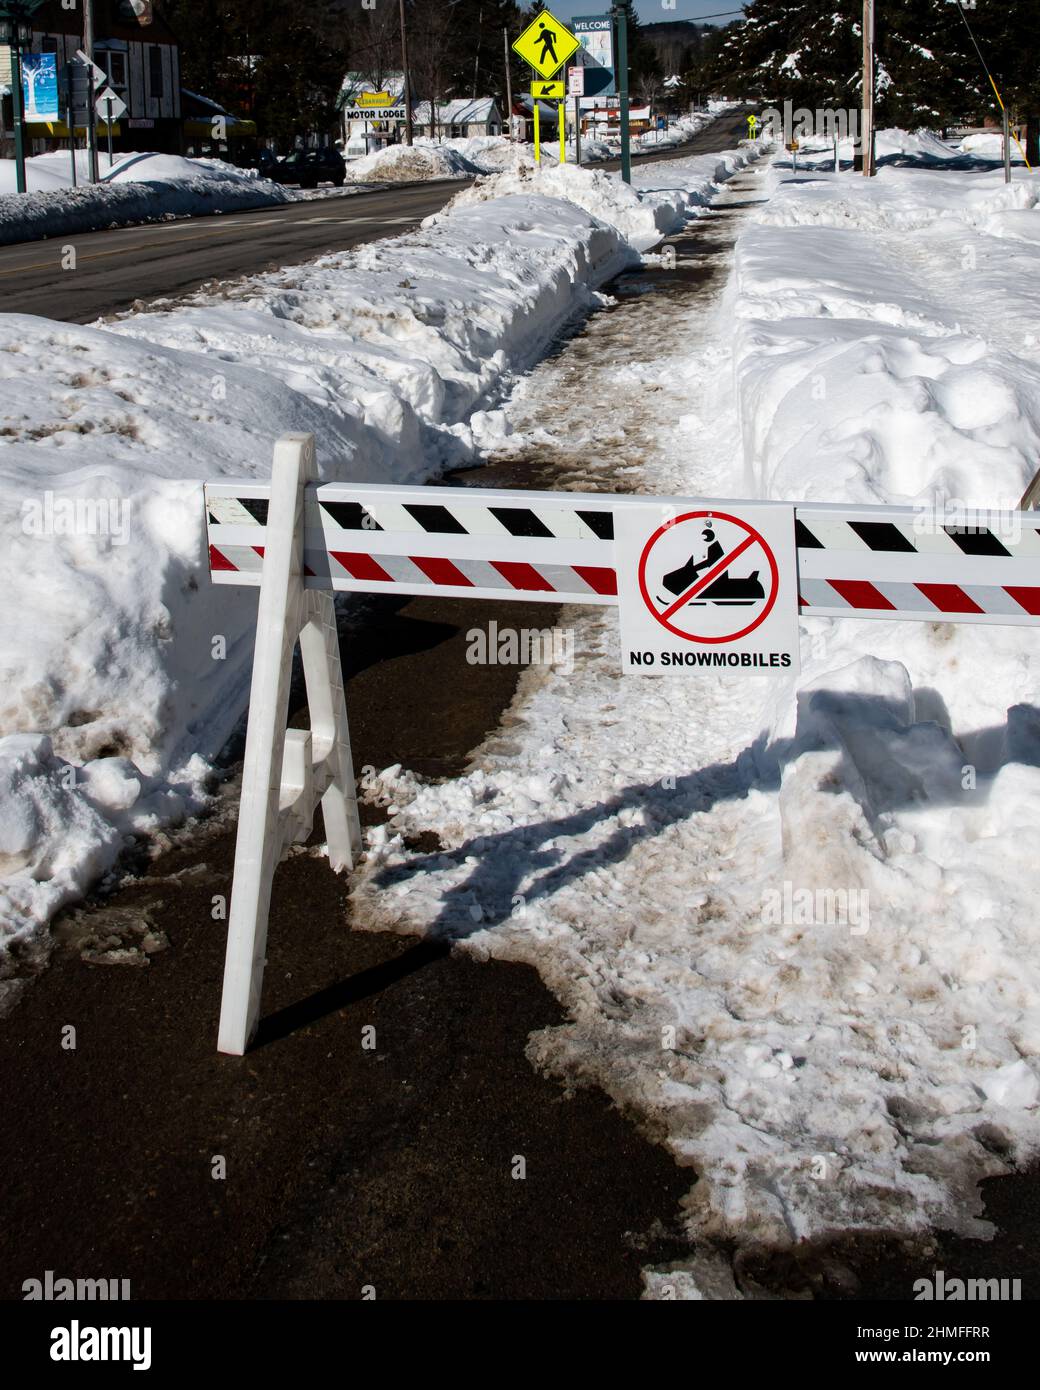 Una barricada roja y blanca y un cartel que indica que no se permiten motos de nieve en la acera con bancos de nieve profundos y hielo. Foto de stock